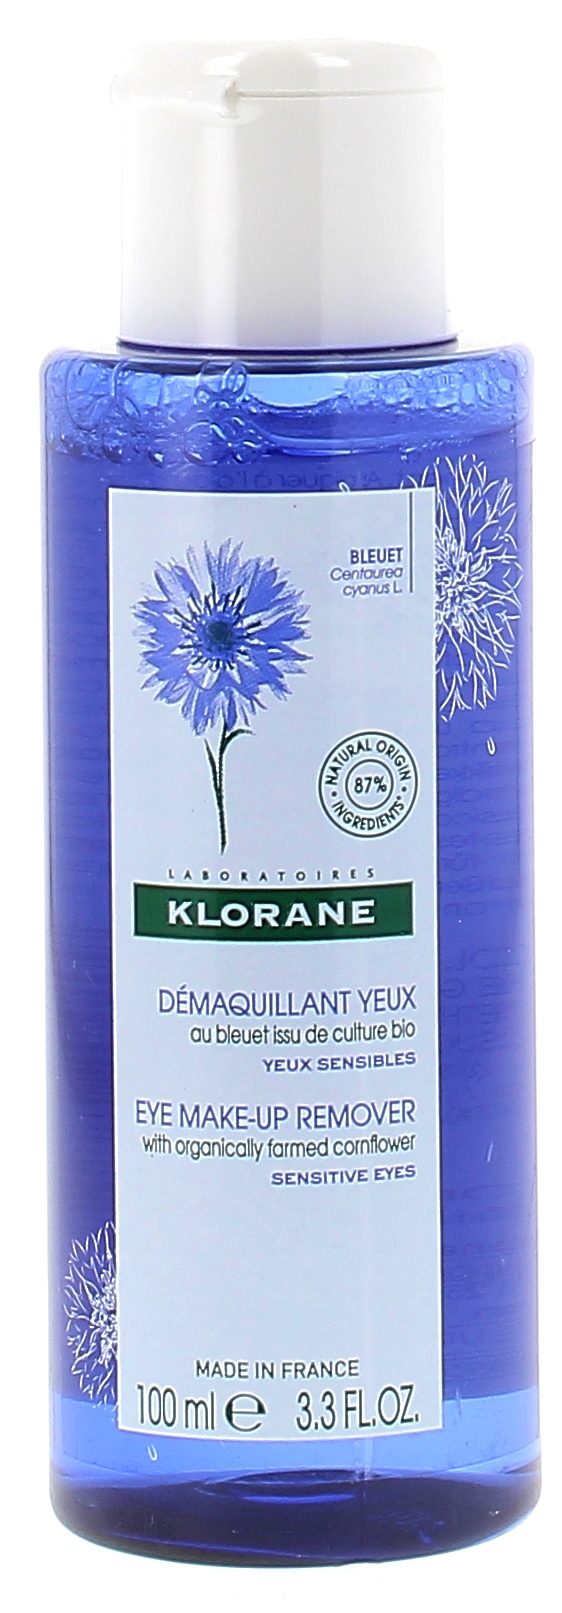 Lotion florale démaquillante au bleuet apaisant Klorane - Flacon de 100ml